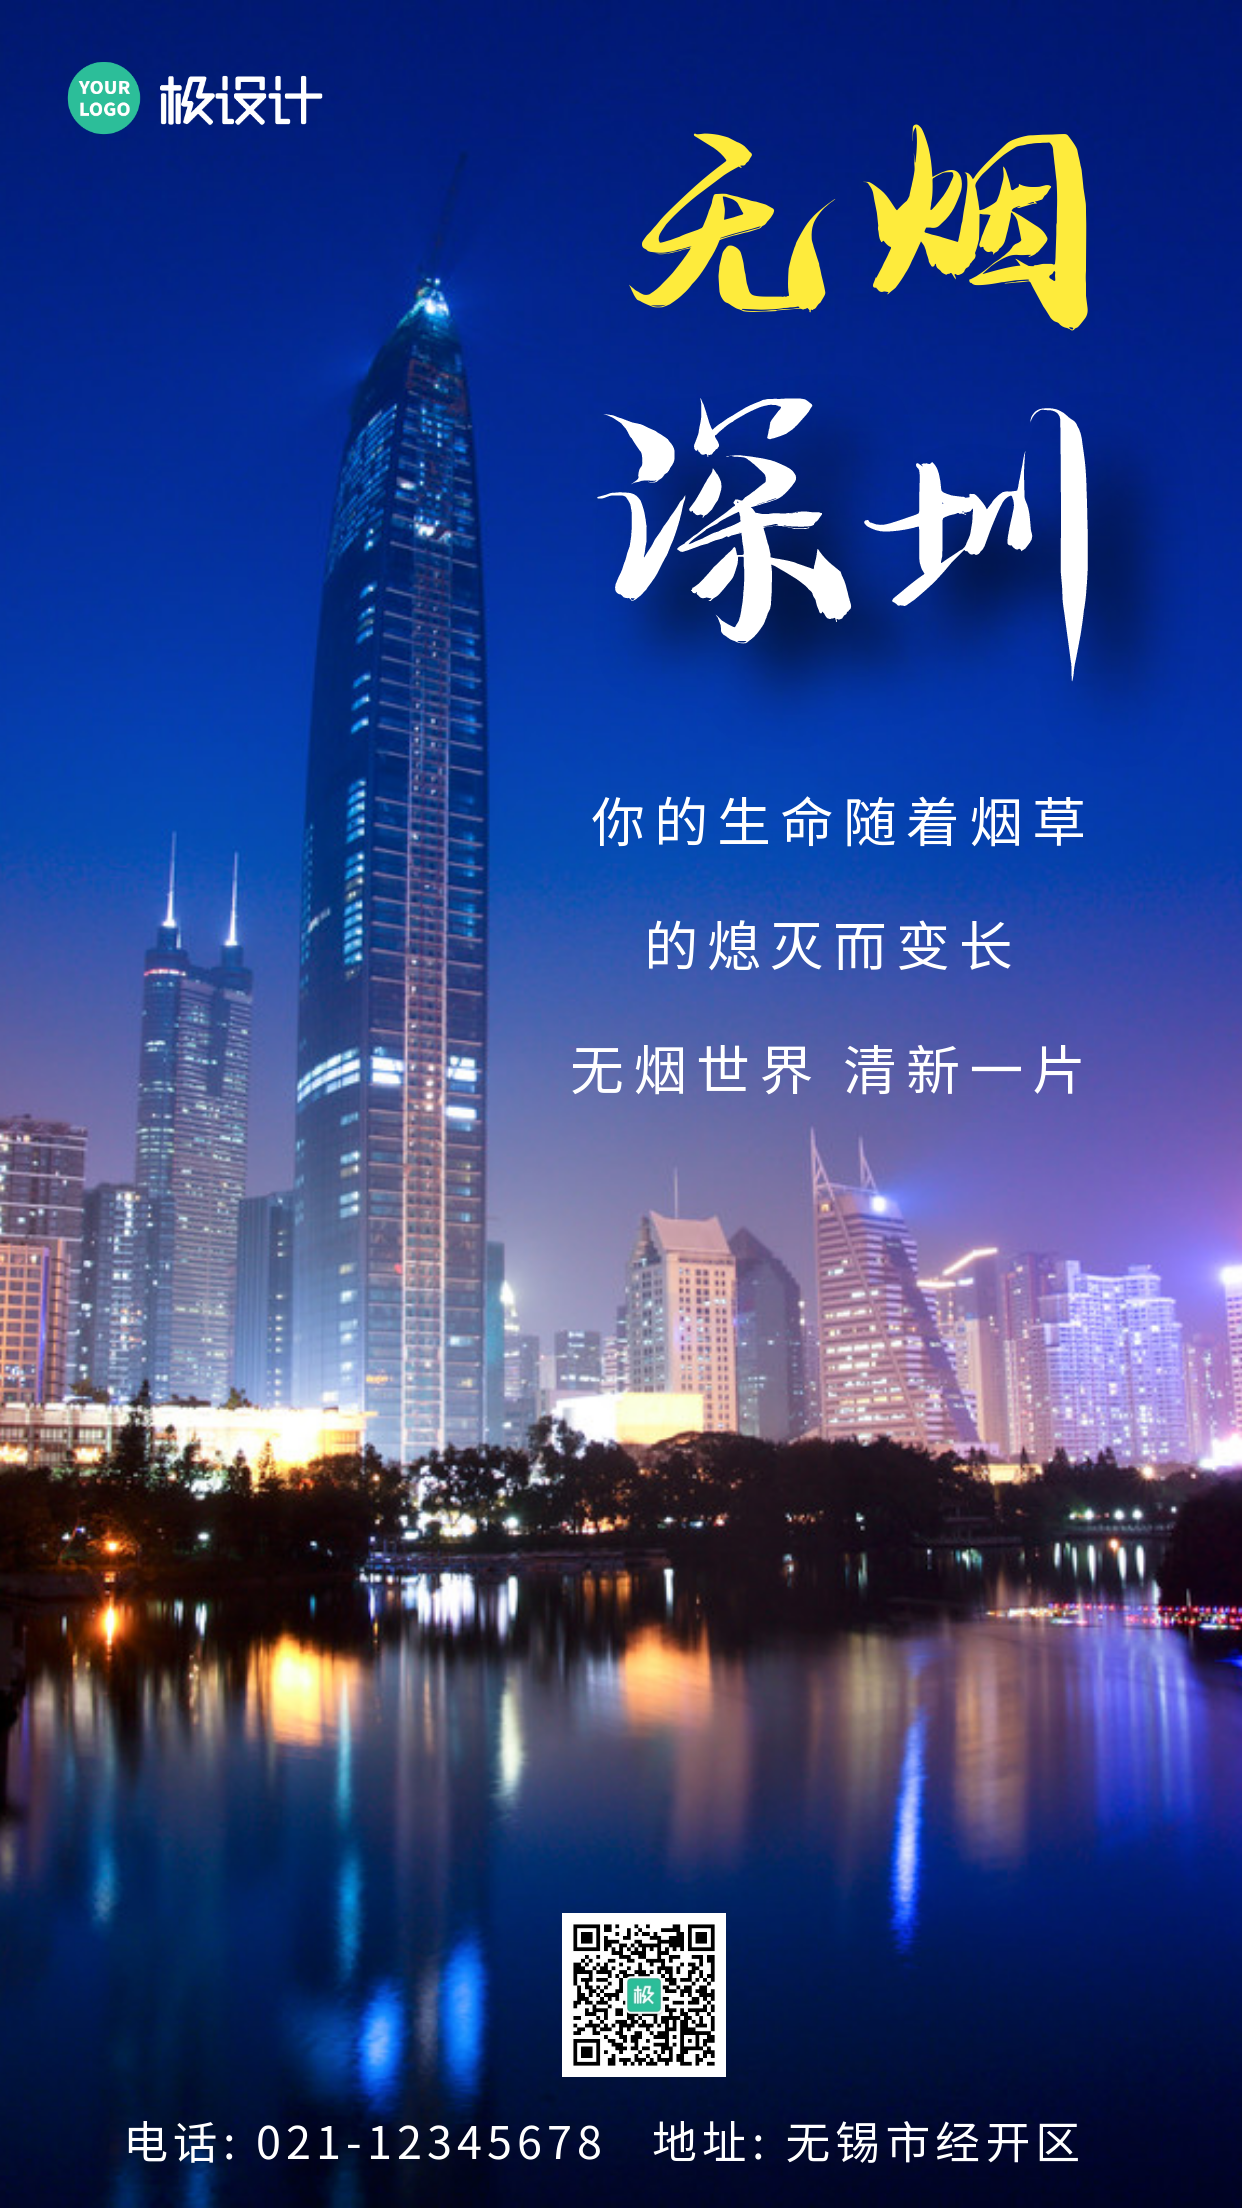 无烟深圳简约创意蓝色大气宣传公益手机海报